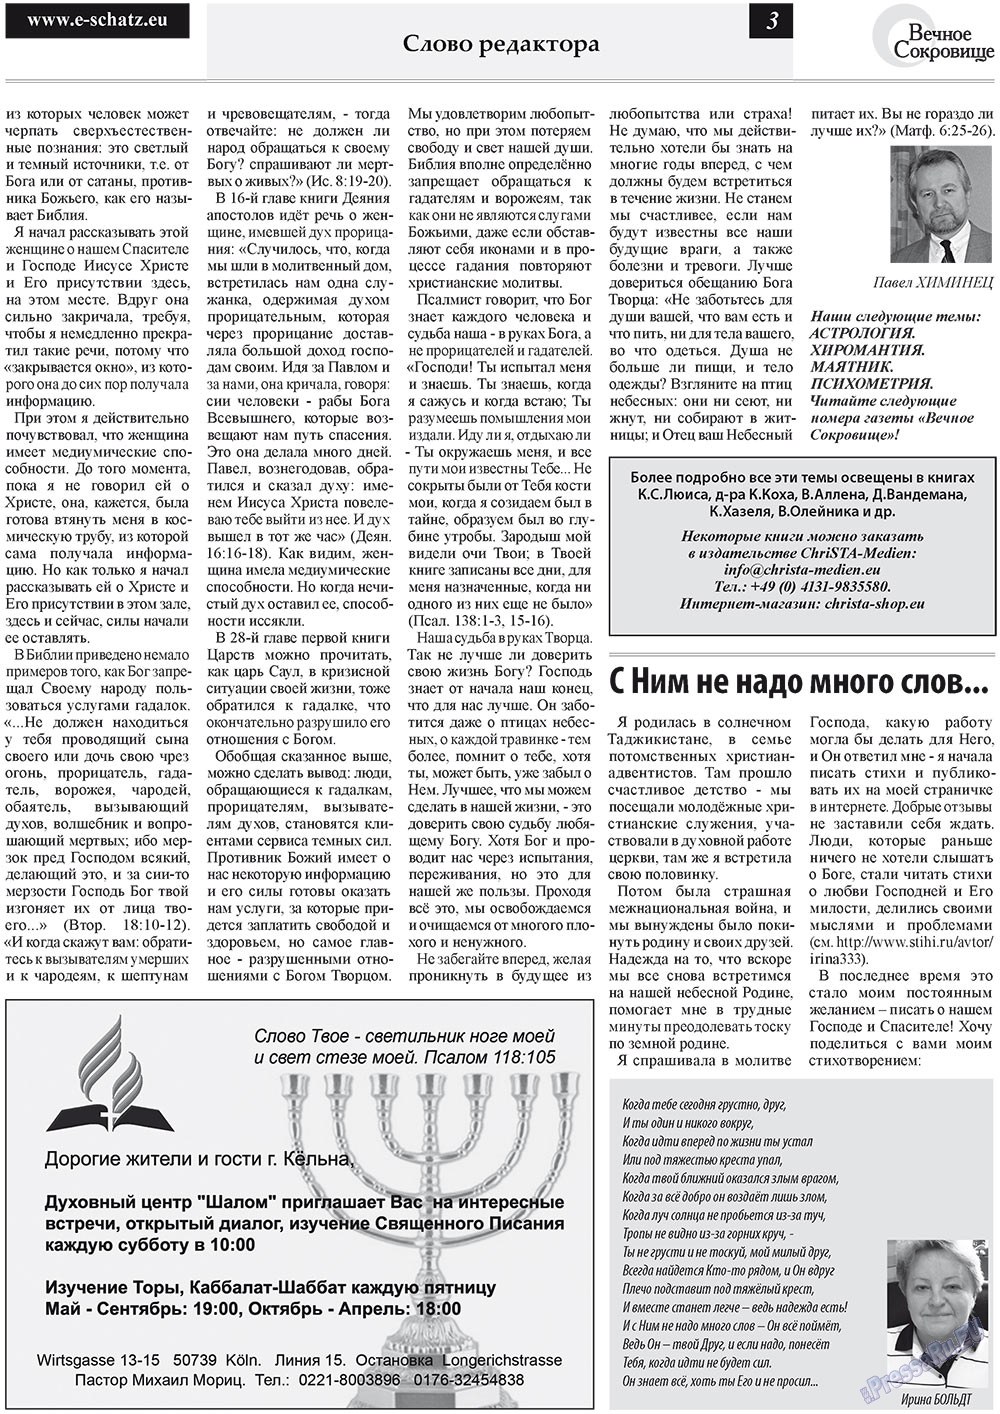 Вечное сокровище (газета). 2011 год, номер 5, стр. 3